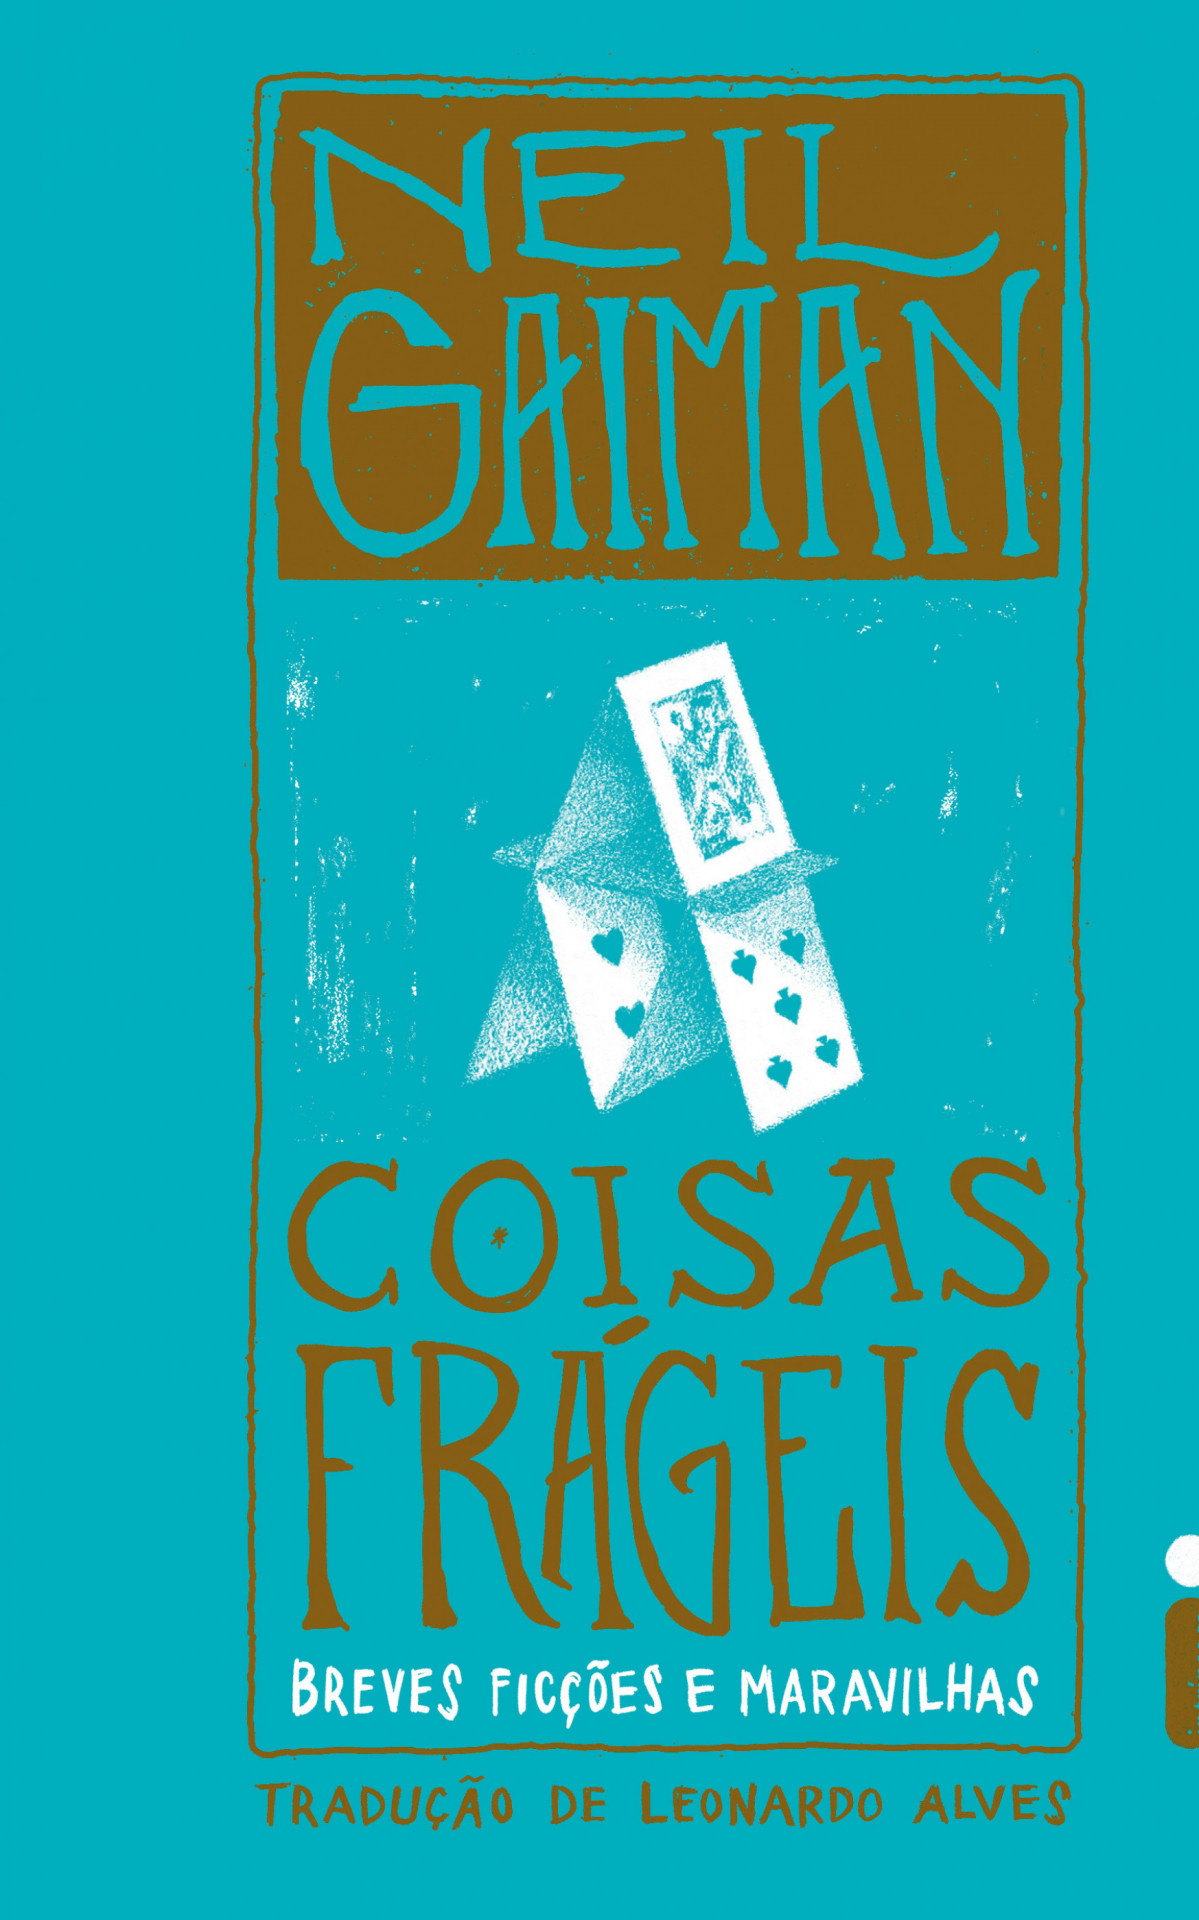 Coletânea 'Coisas Frágeis' ganha edição em volume único - Divulgação